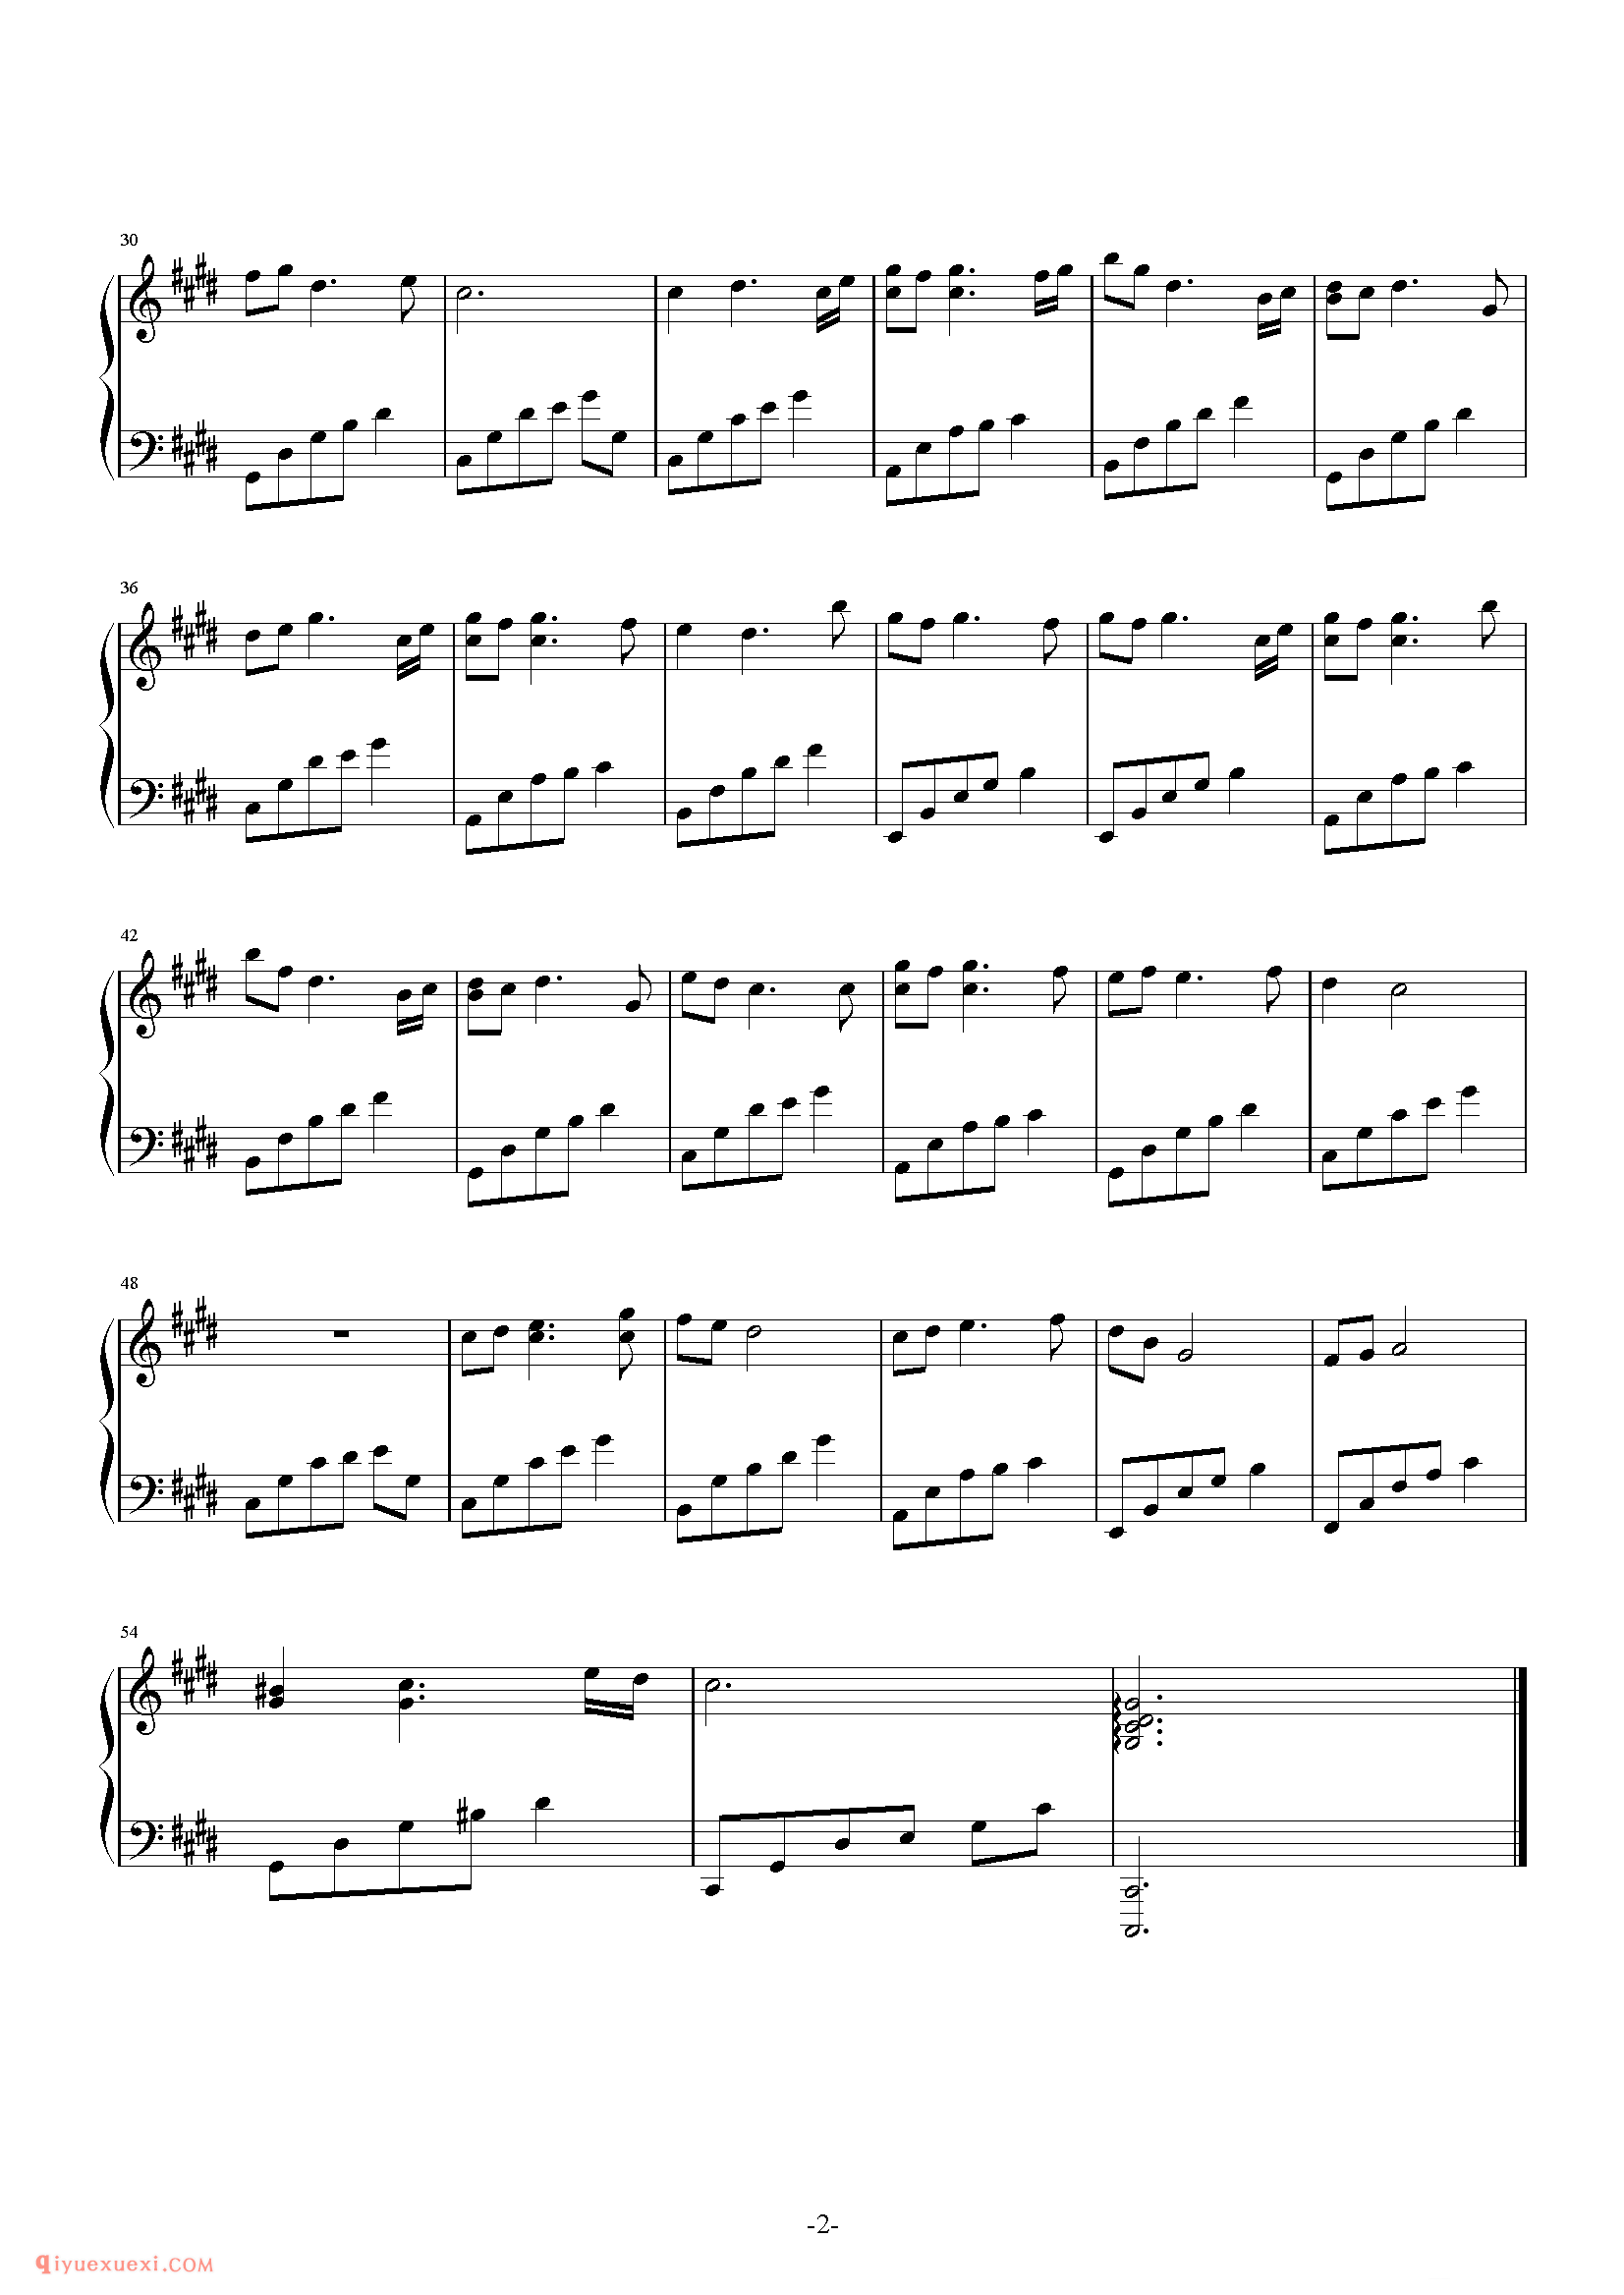 石进《夜的钢琴曲》第22首_石进夜的钢琴曲(22)五线谱